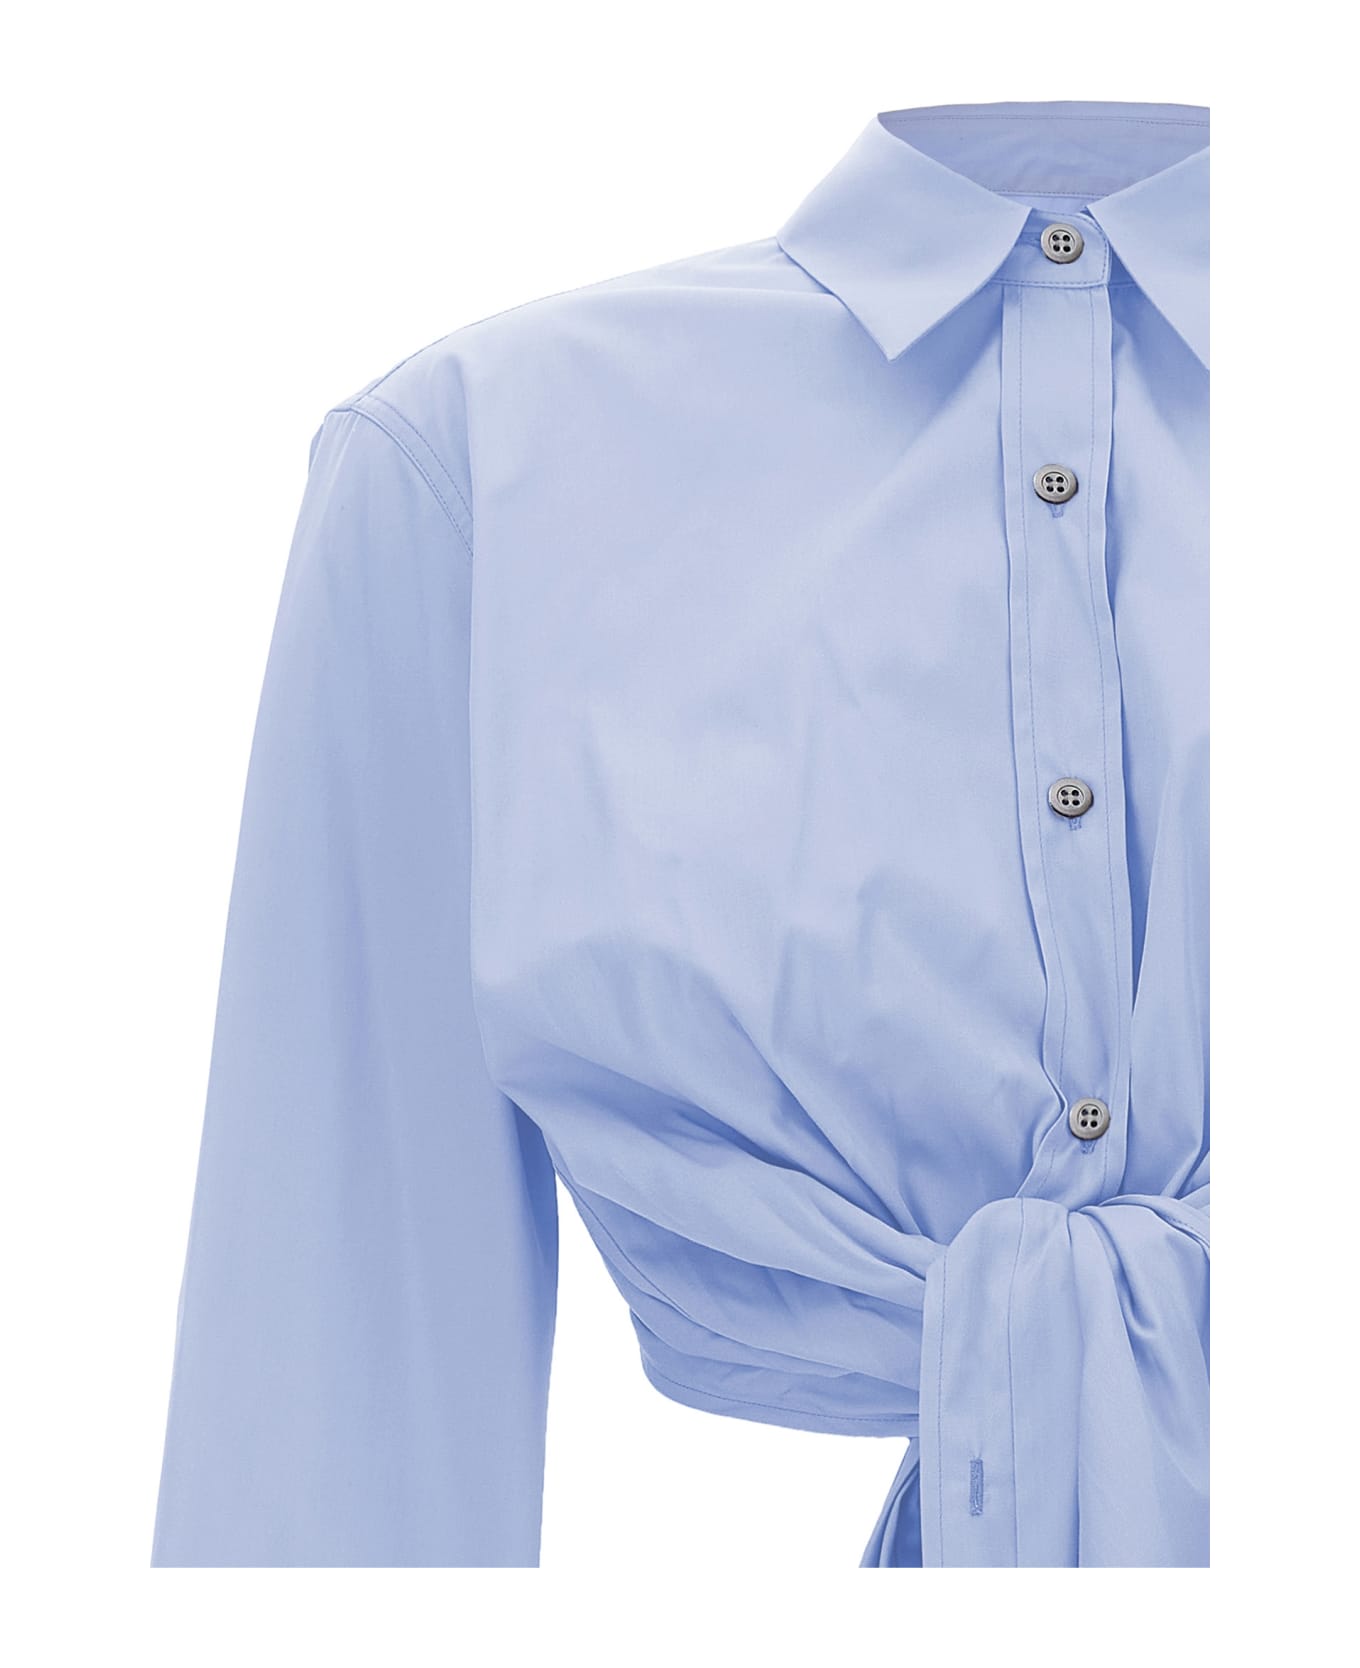 Dries Van Noten 'calbero' Shirt - Light Blue